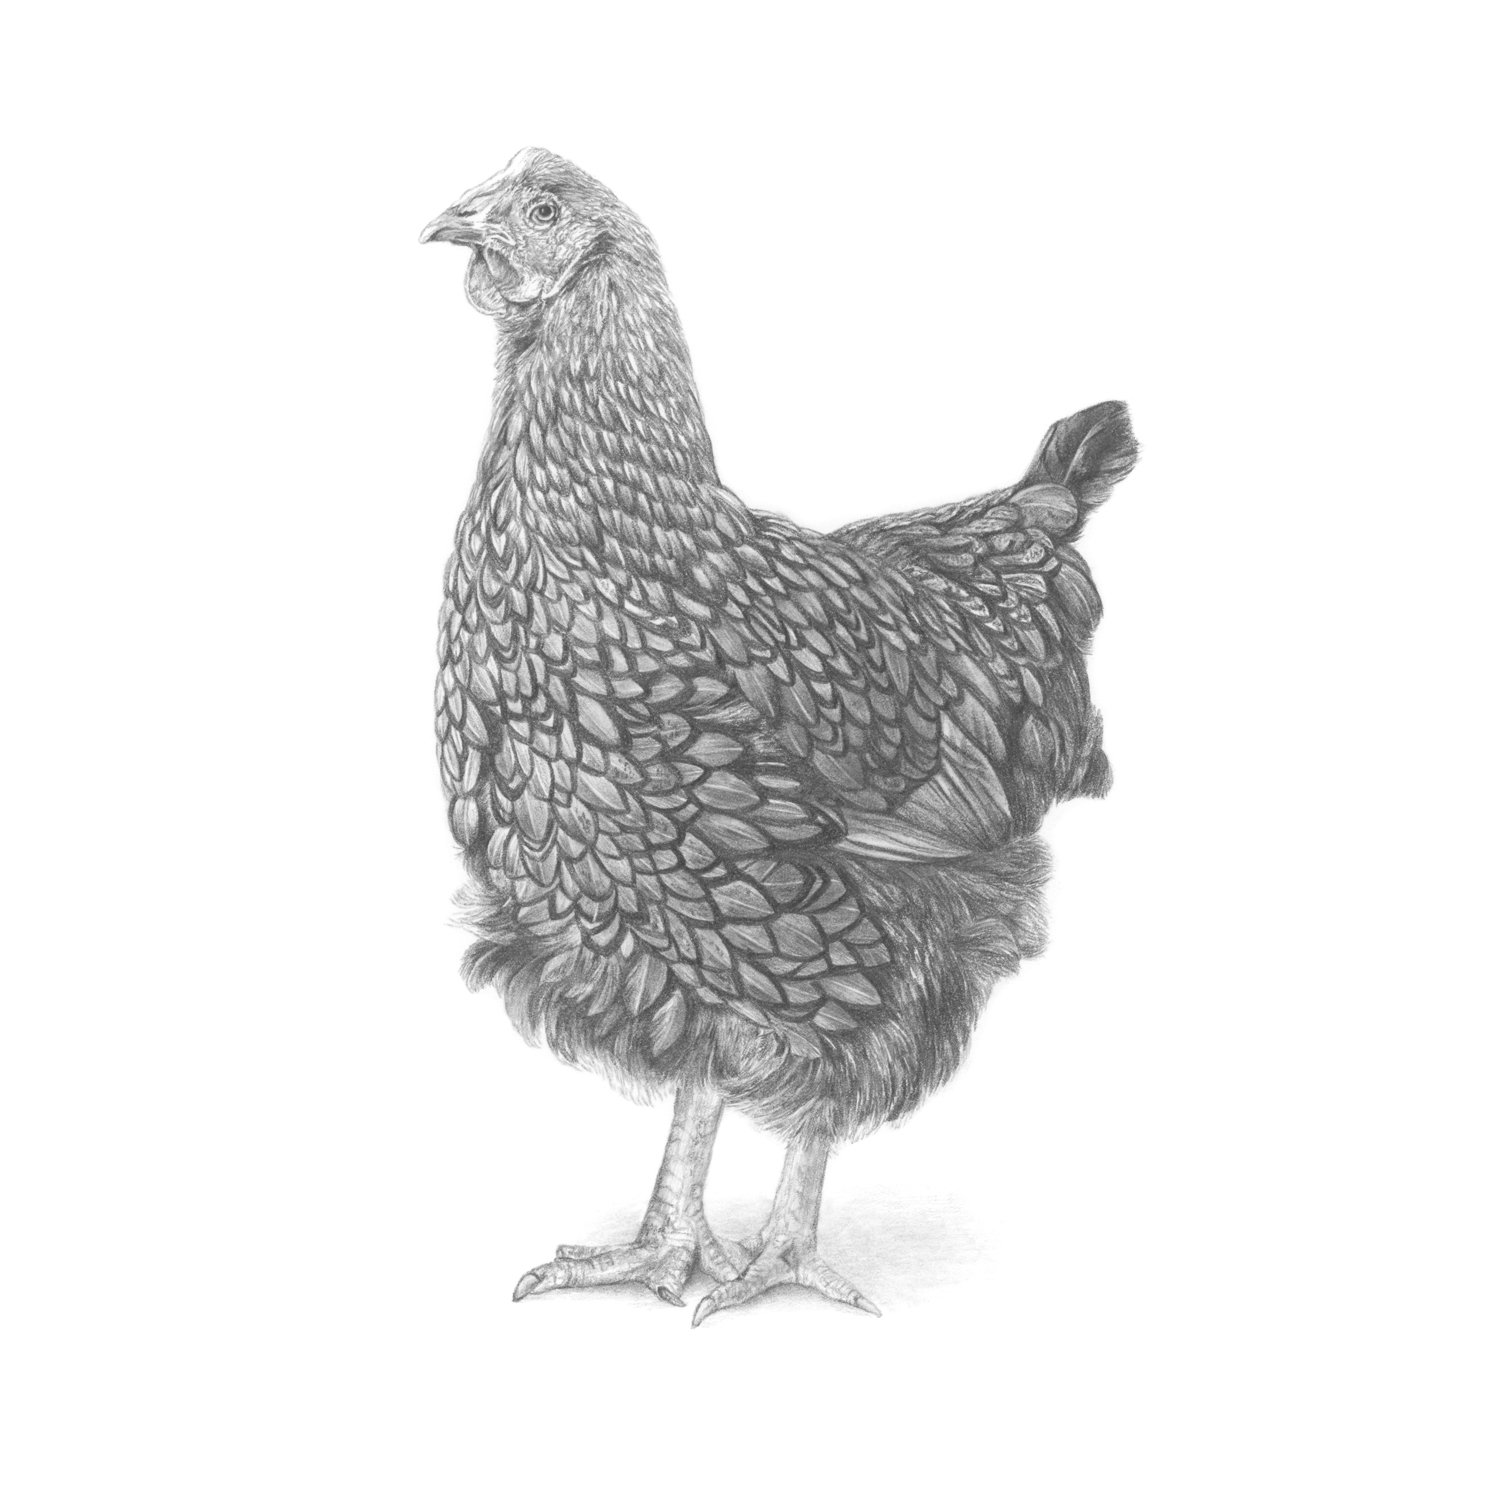 jo-murphy-commission-portrait-chicken-2.jpg